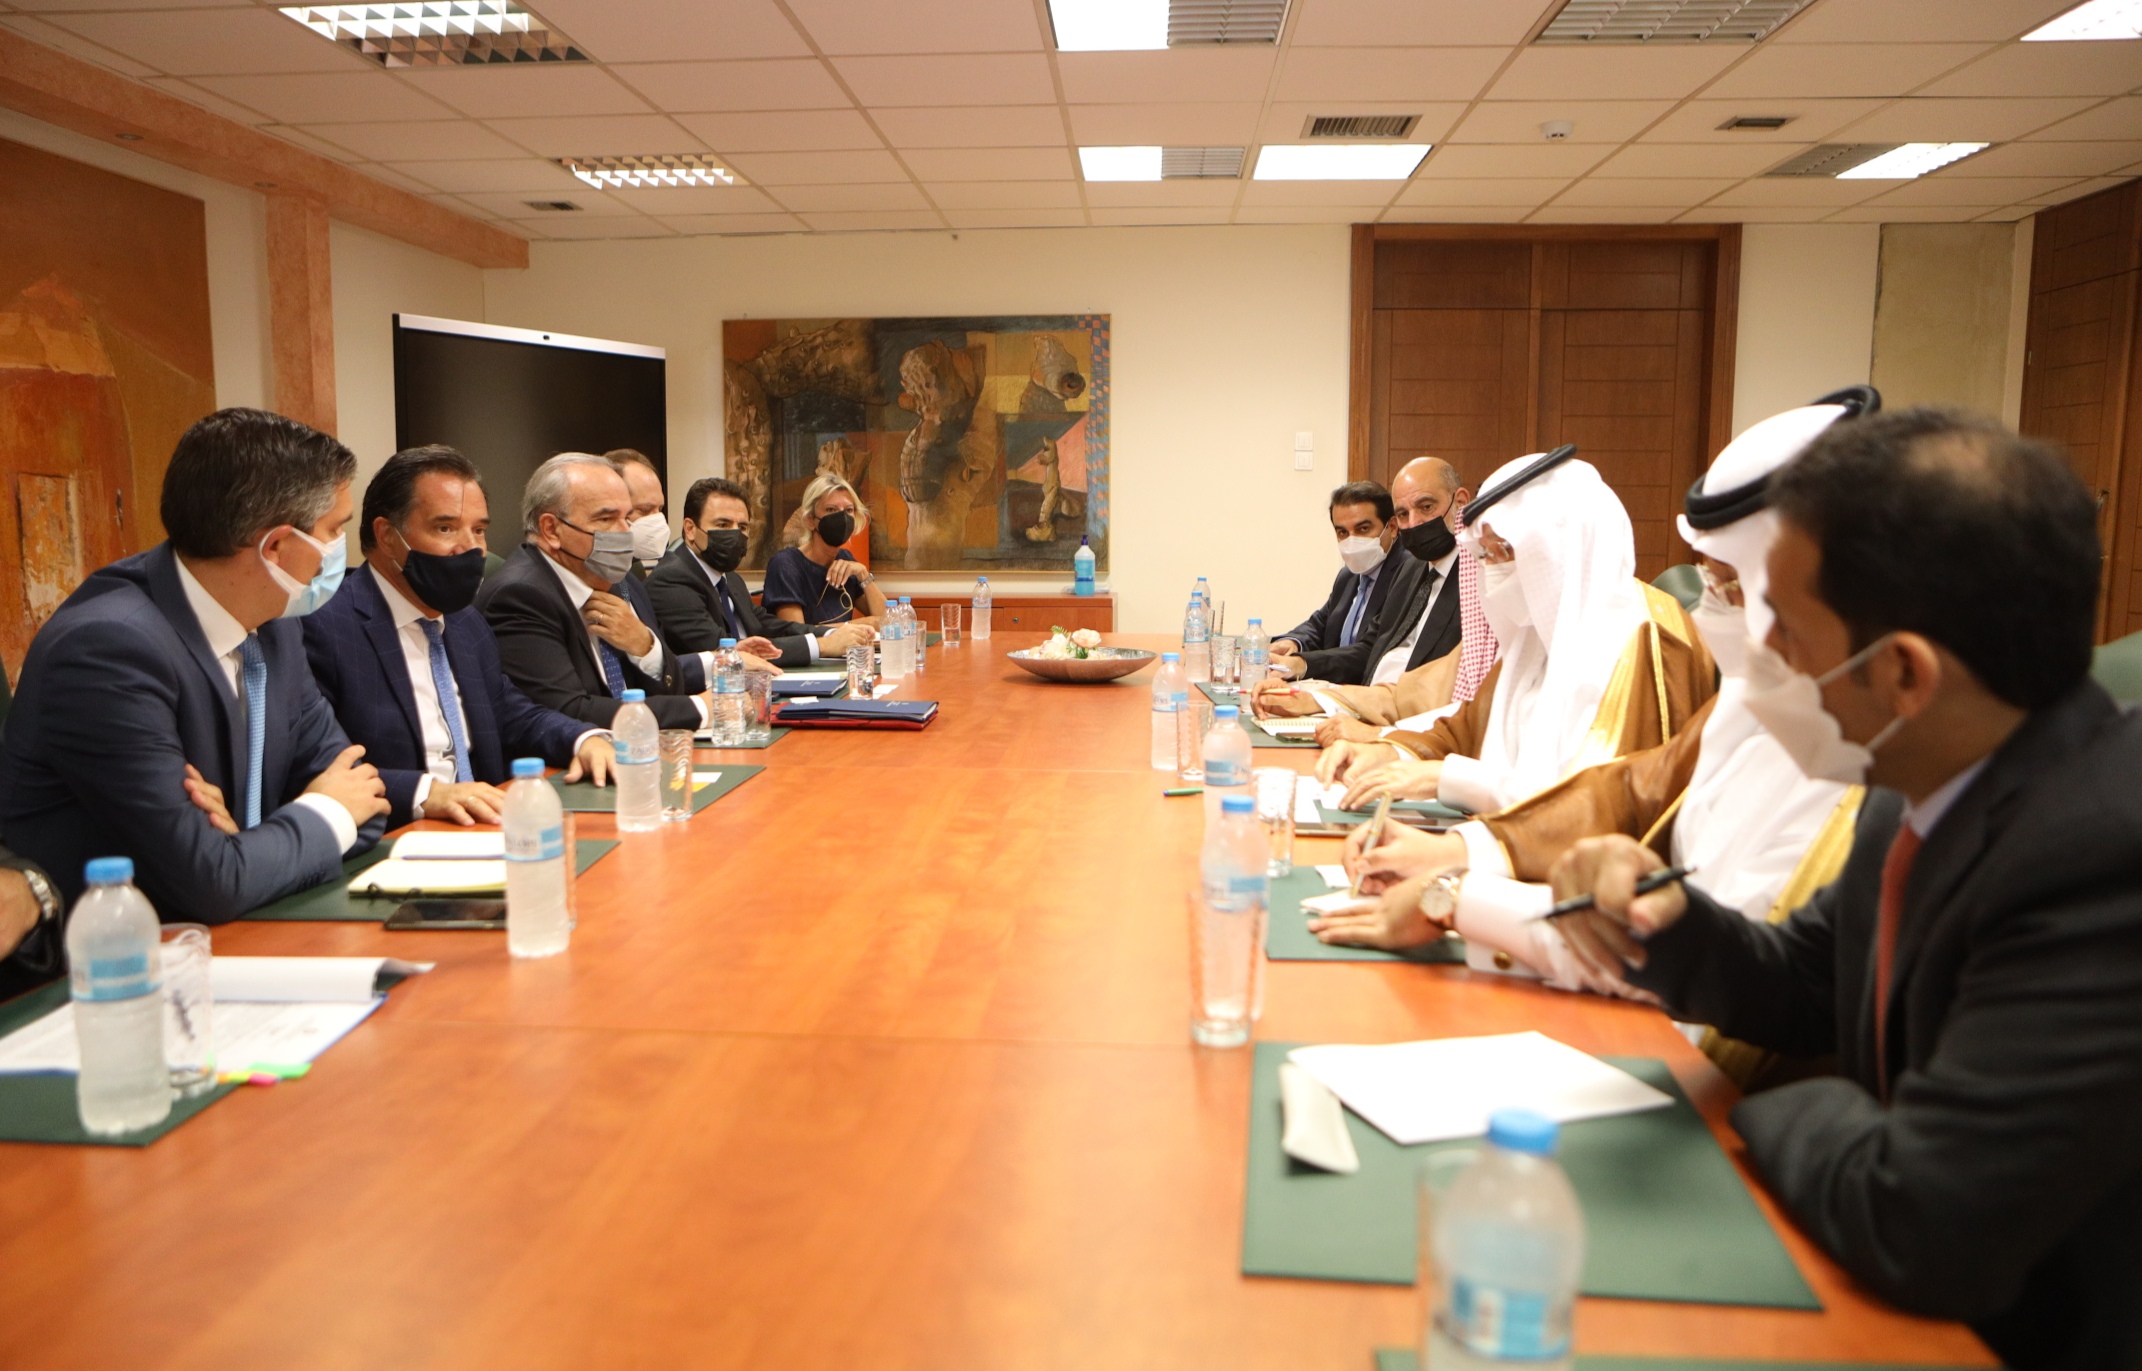 Ο Υπουργός Ανάπτυξης & Επενδύσεων, Άδωνις Γεωργιάδης συναντήθηκε με τον Υπουργό Επενδύσεων της Σαουδικής Αραβίας, Khalid bin Abdulaziz Al-Falih, παρουσία του Αν. Υπ., Ν. Παπαθανάση και των Υφυπουργών, Χρ. Δήμα και Ι. Τσακίρη